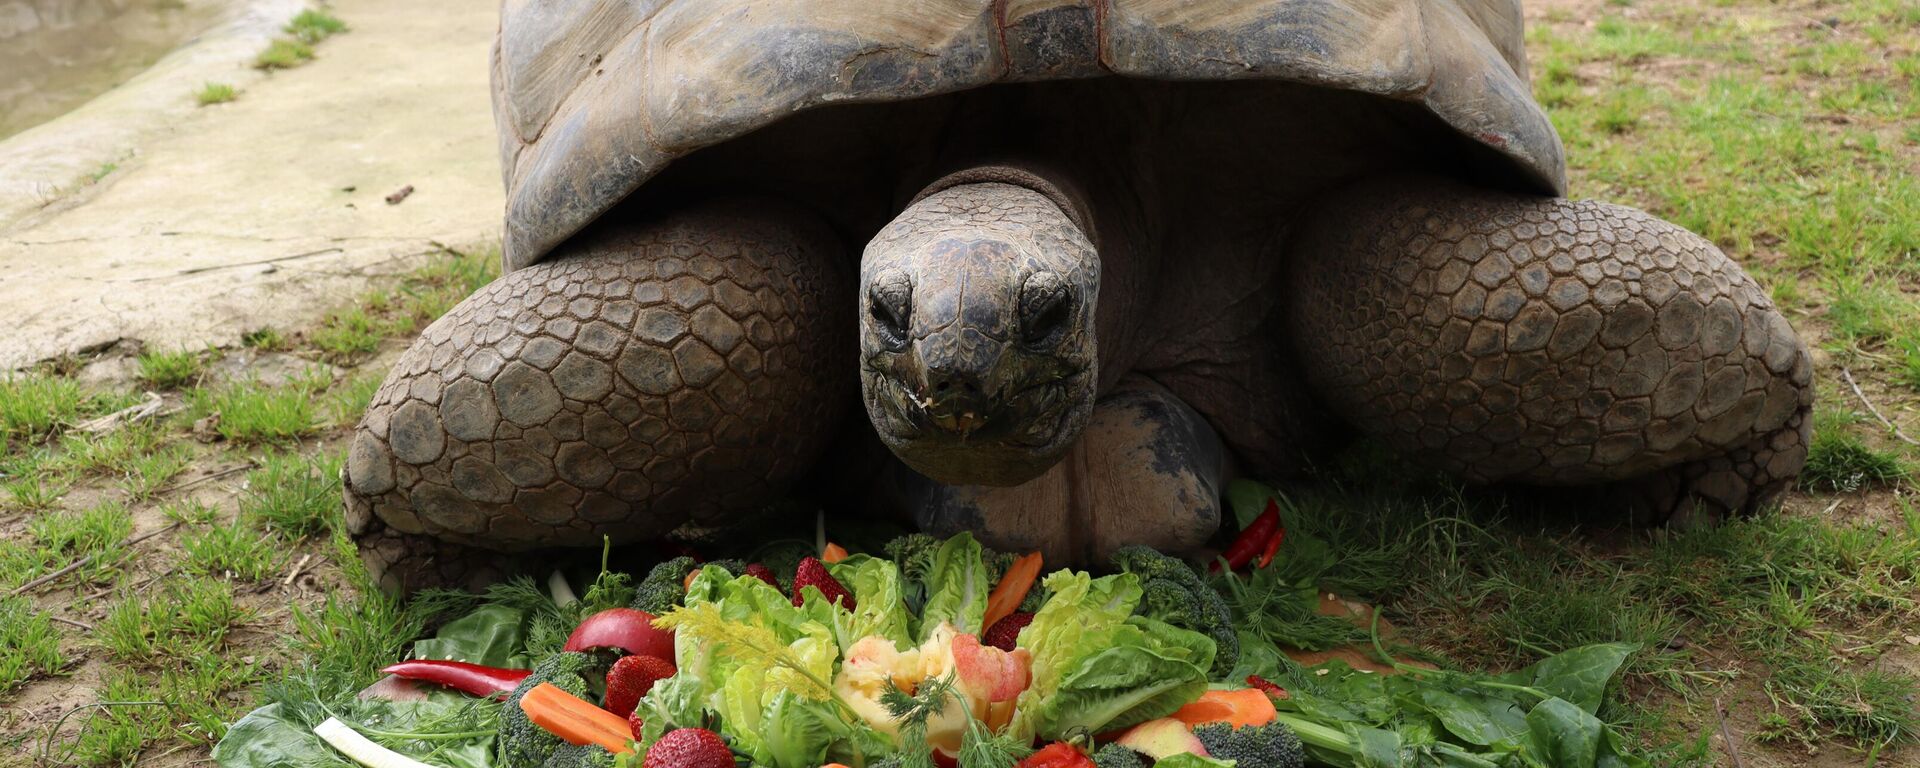 Kocaeli'nin Darıca ilçesindeki Faruk Yalçın Hayvanat Bahçesi'nin en yaşlı sakini kaplumbağa Tuki'nin 103. yaş günü kutlandı. Türkiye'nin en yaşlı kaplumbağası olarak bilinen ve nesli tükenme tehlikesi altındaki türlerden olan dev Aldabra kaplumbağası Tuki için doğum günü etkinliği düzenlendi - Sputnik Türkiye, 1920, 16.04.2023